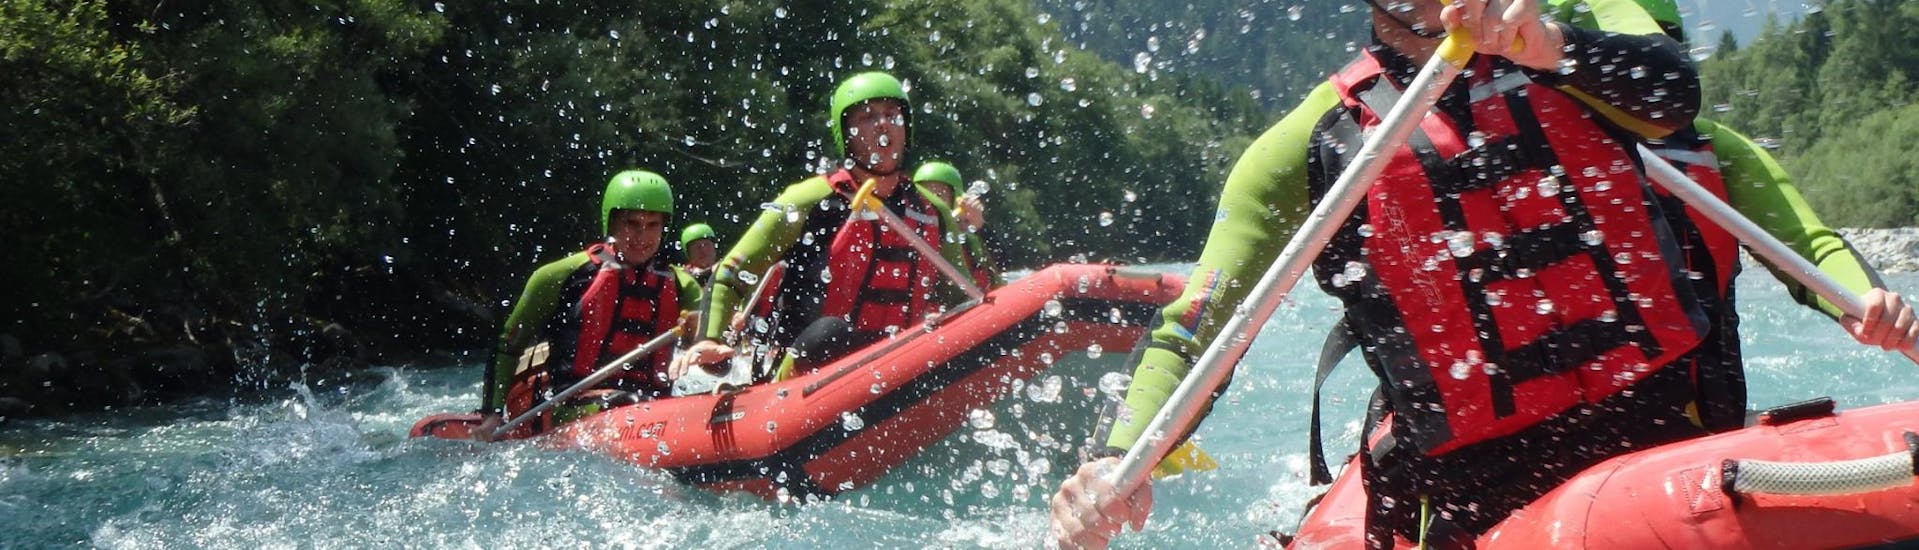 Rafting avanzado en Blaichach - Lech (river).